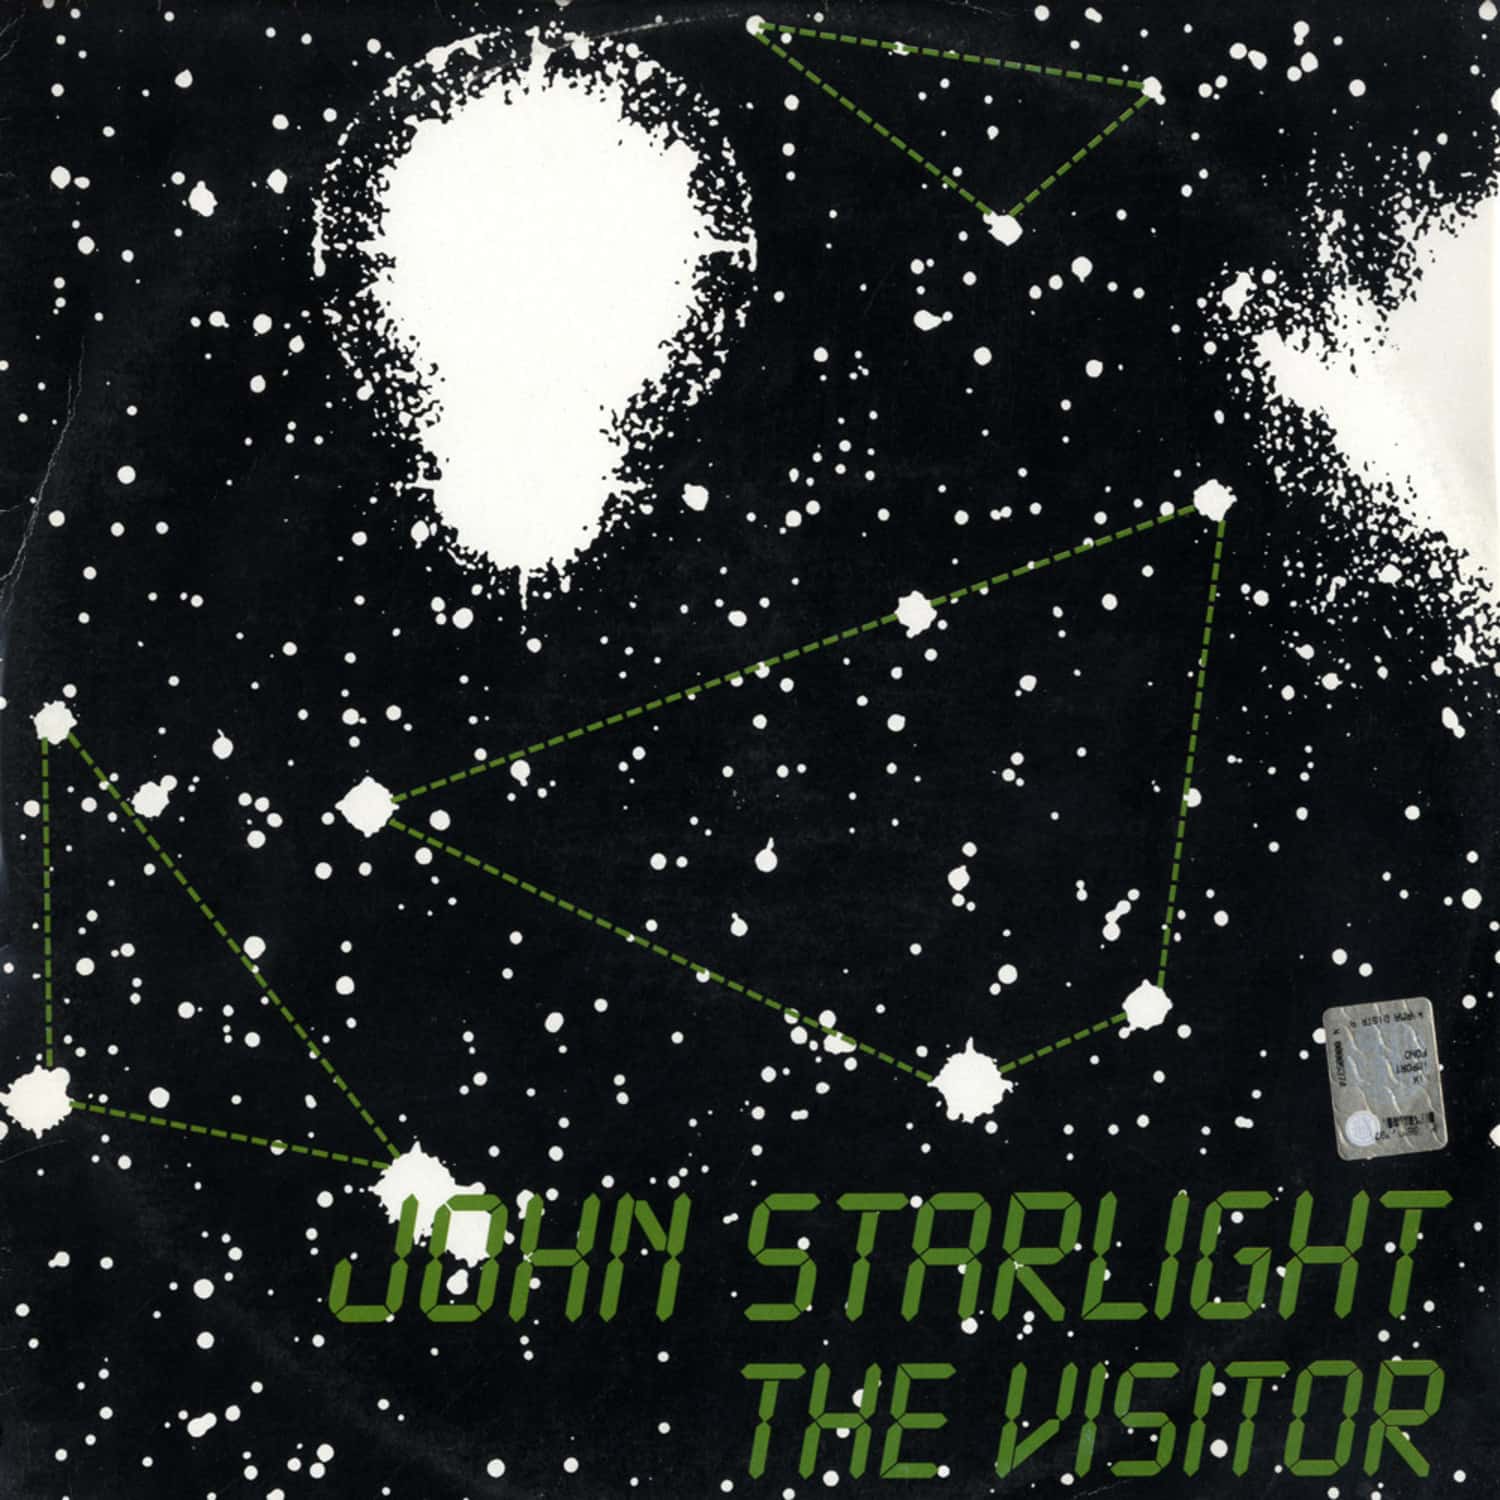 John Starlight - THE VISITOR